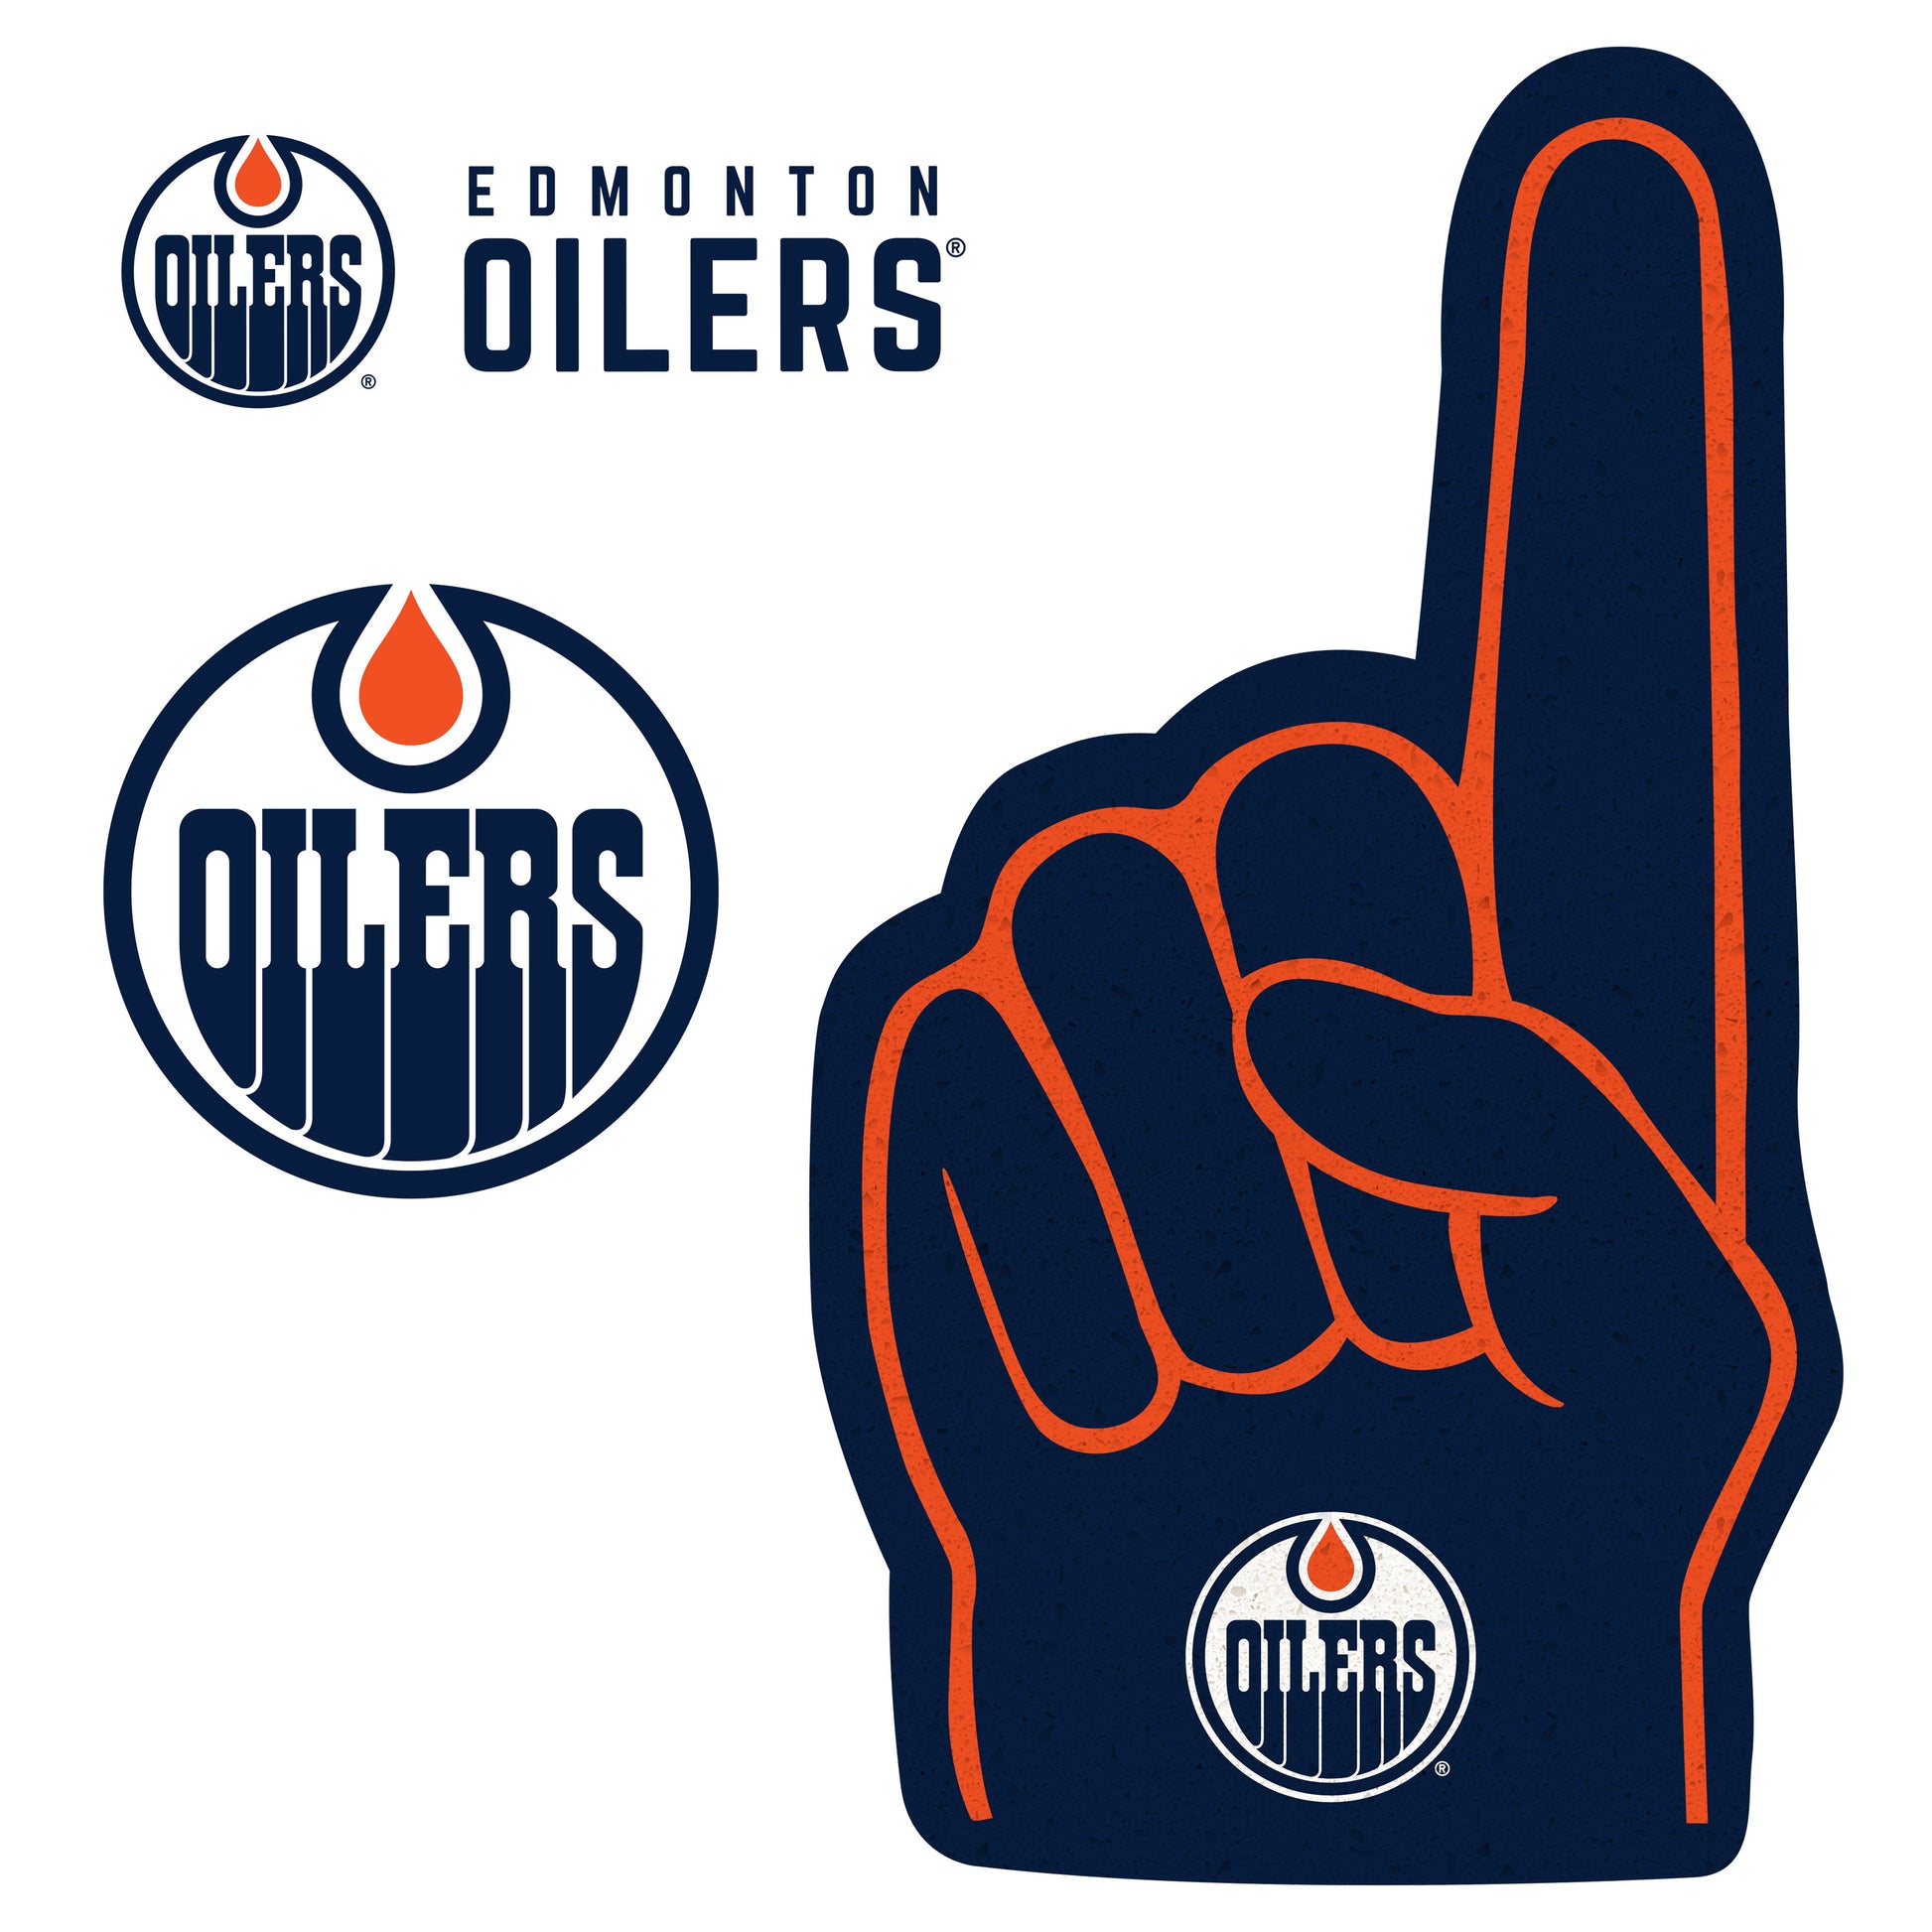 Edmonton Oilers: 2022 Foam Finger Minis - Officially Licensed NHL